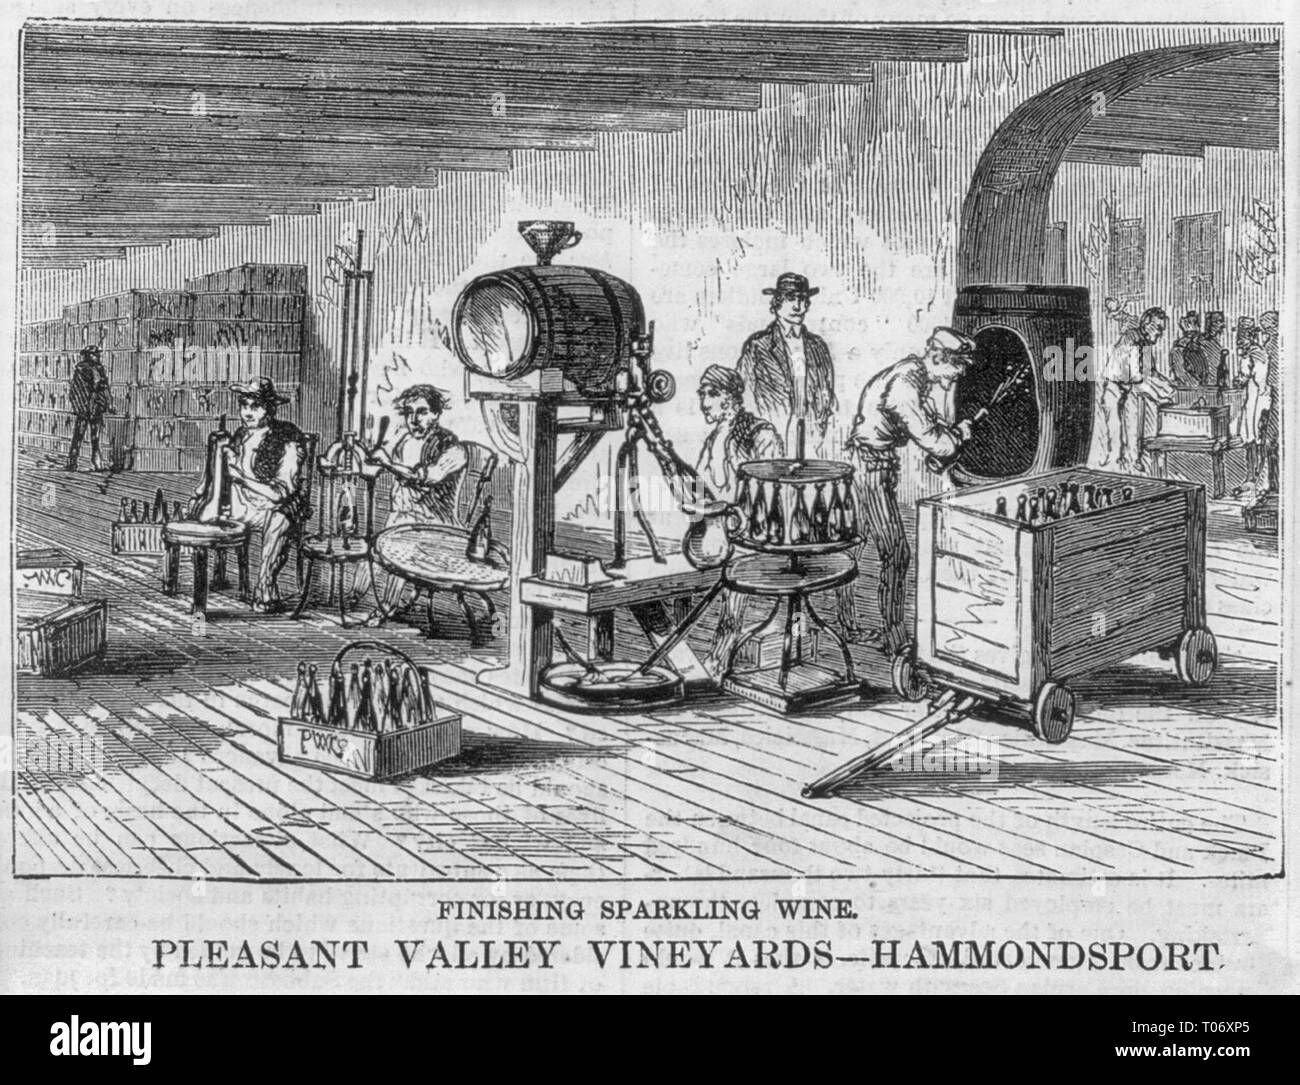 Vino espumoso de acabado - Pleasant Valley Vineyards, Hammondsport, N.Y., circa 1872 Foto de stock